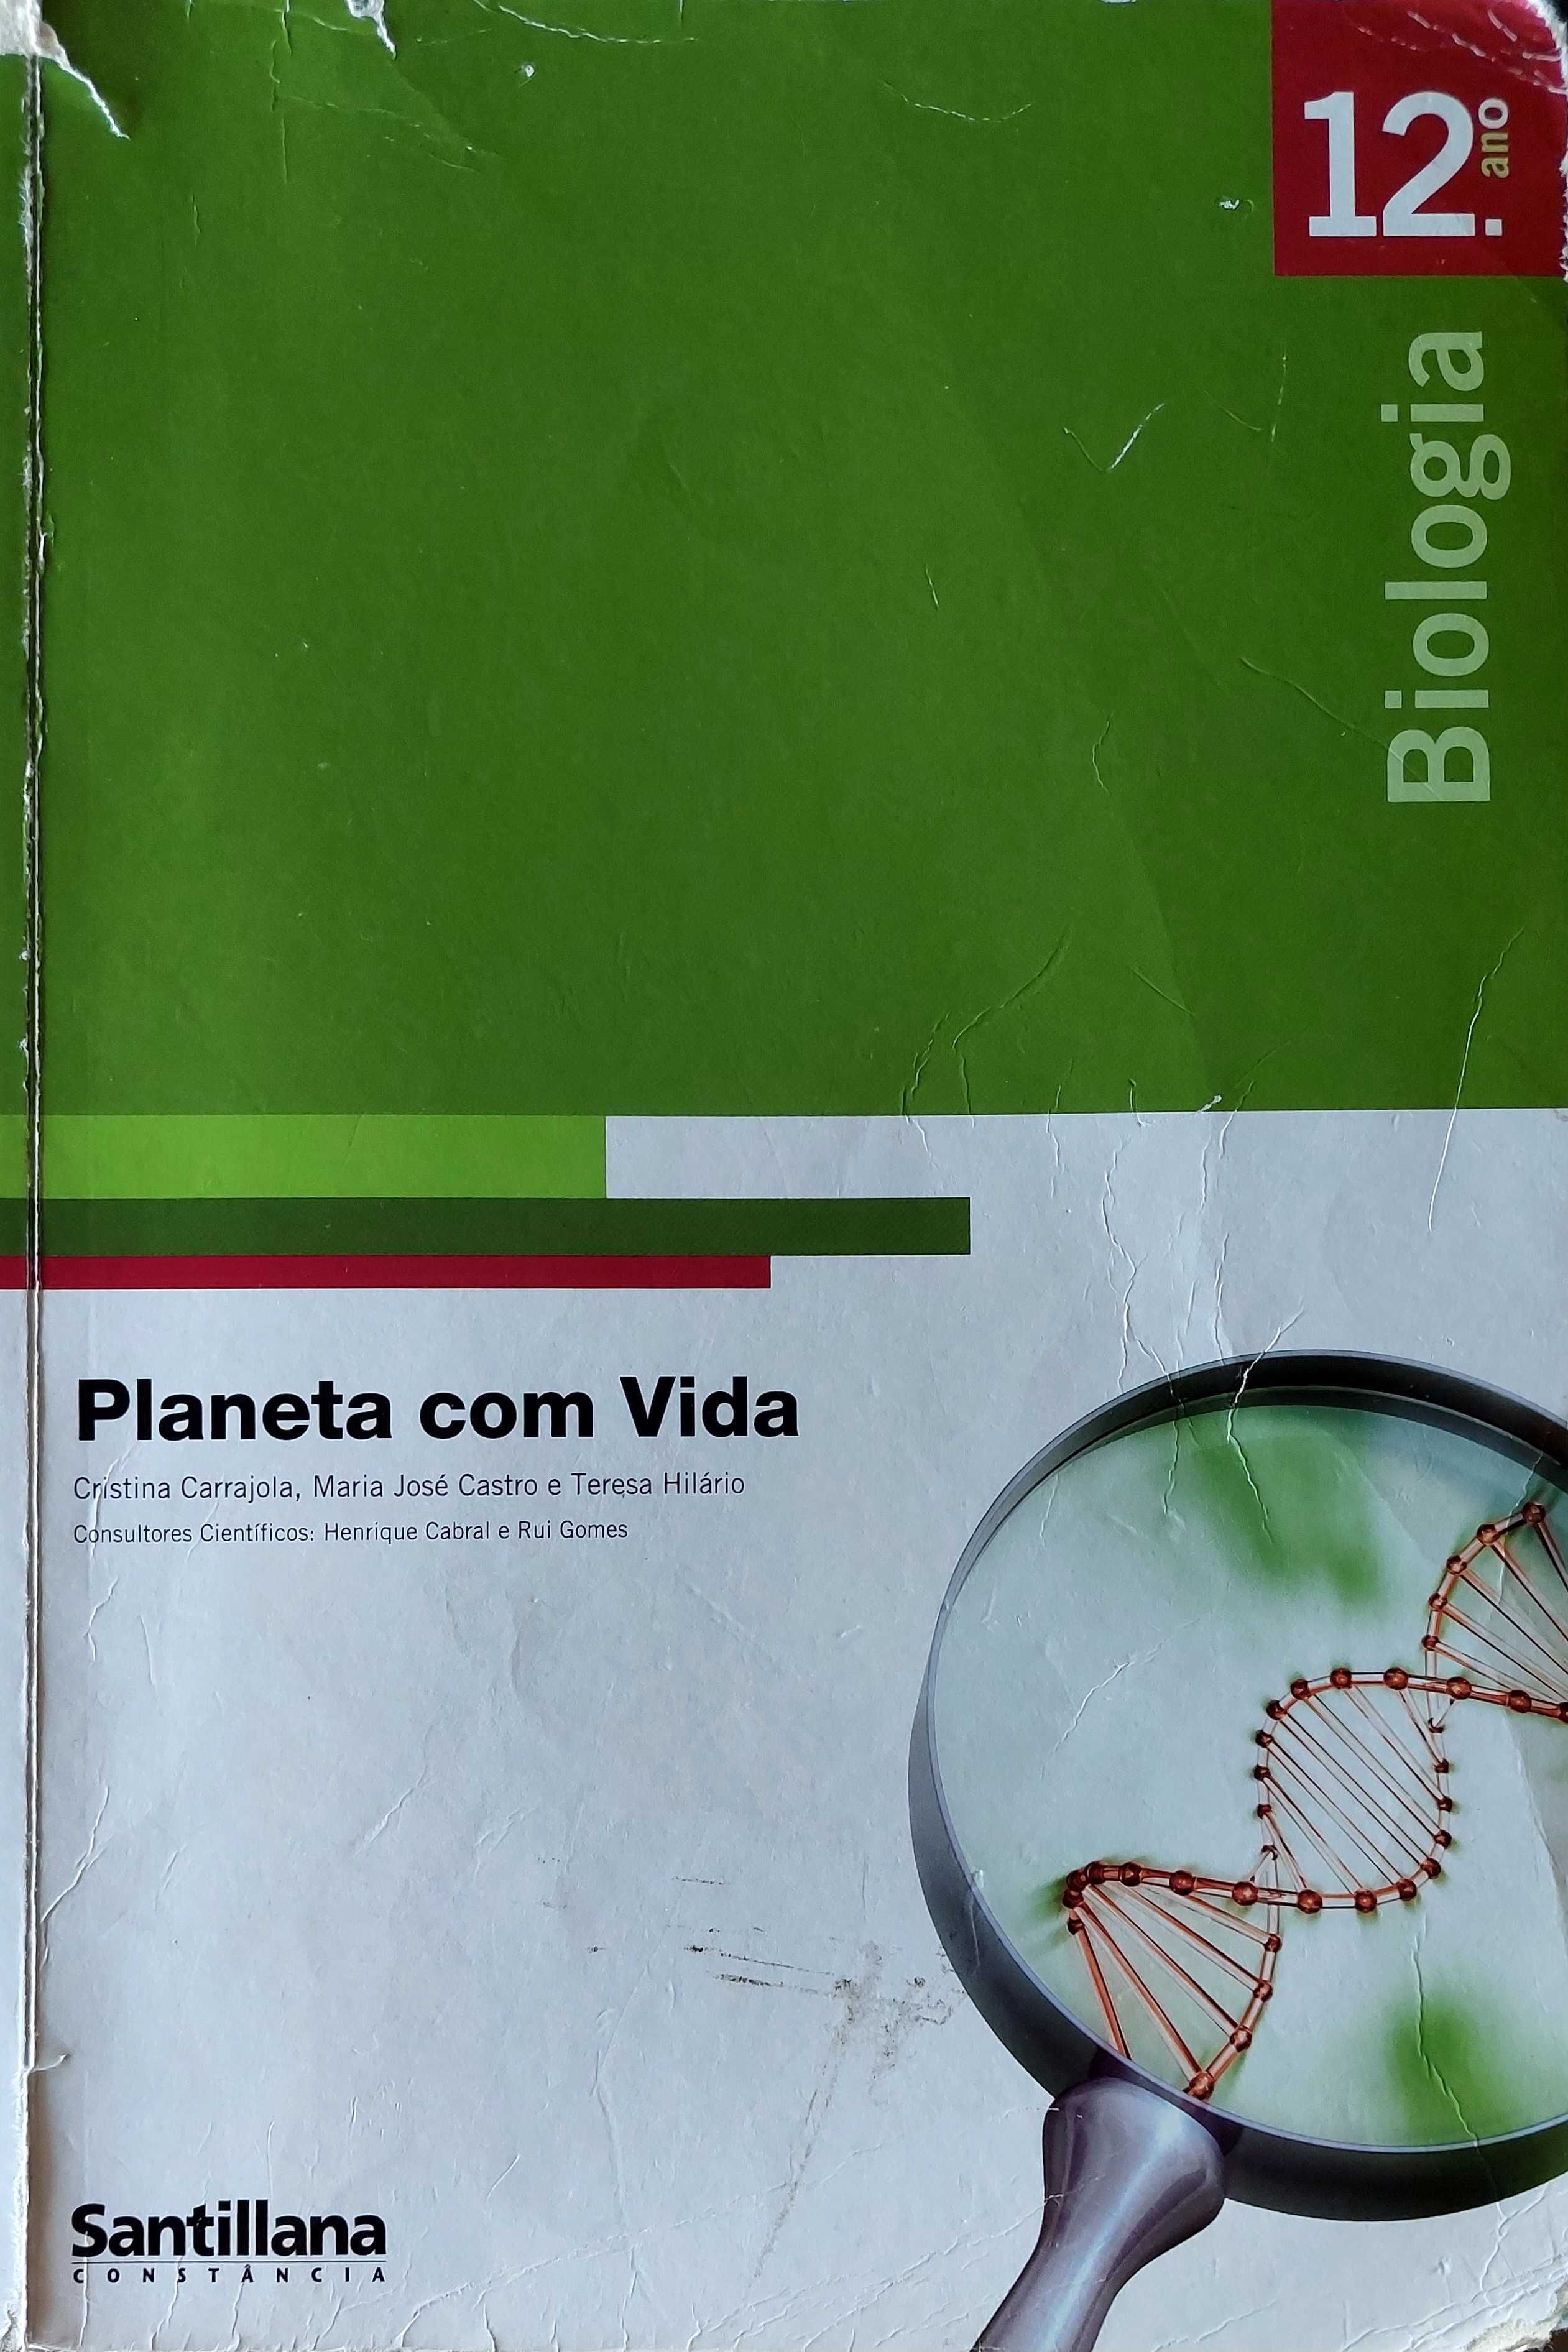 Manual de Biologia 12 - Planeta com vida - Santillana